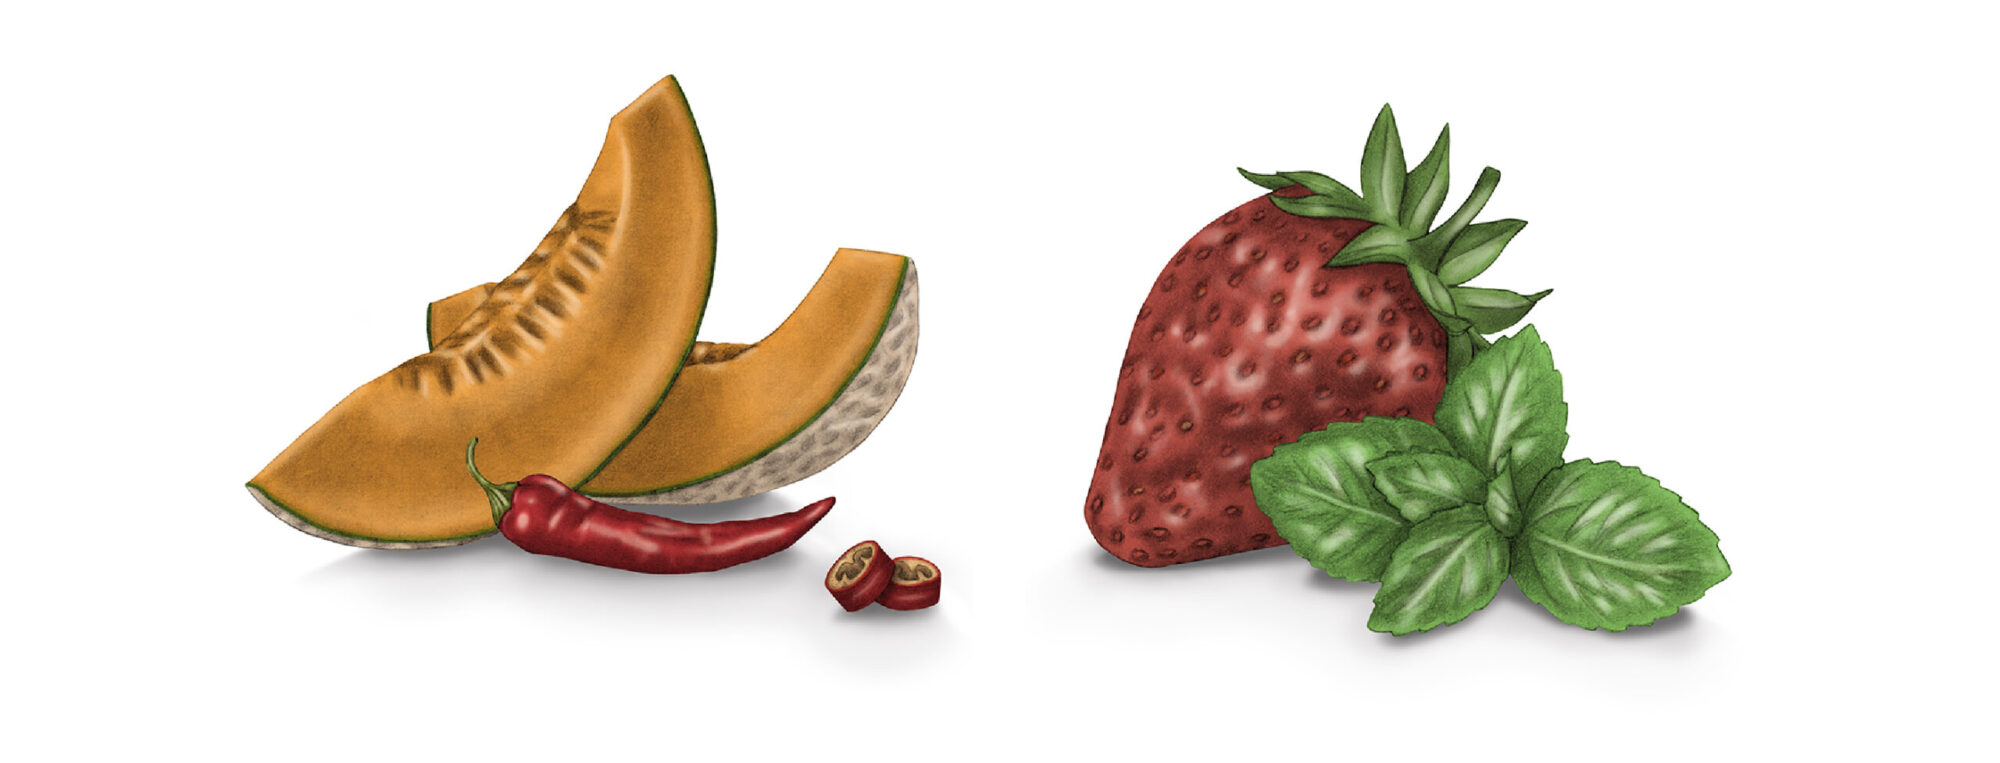 giulia-borsi-illustration-label-design-melon-strawberry-mint